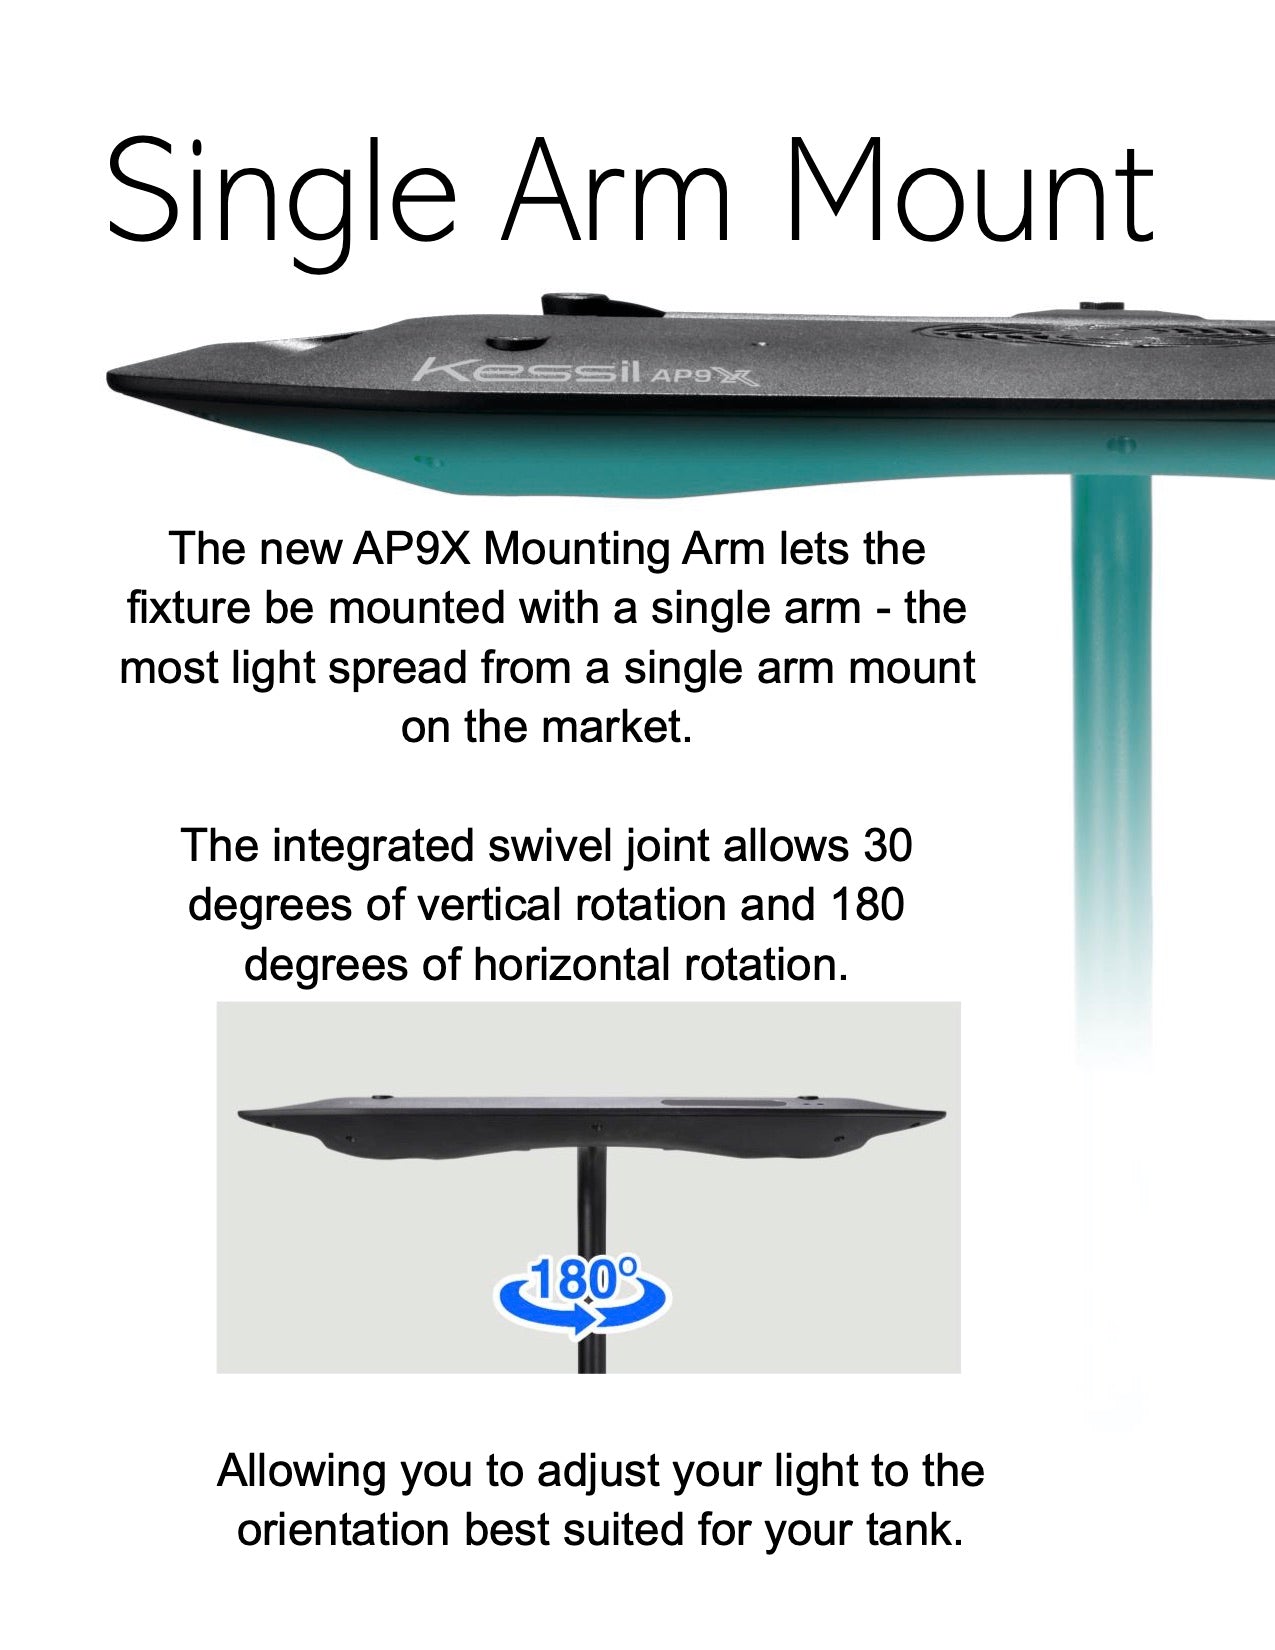 AP9X Mounting Arm